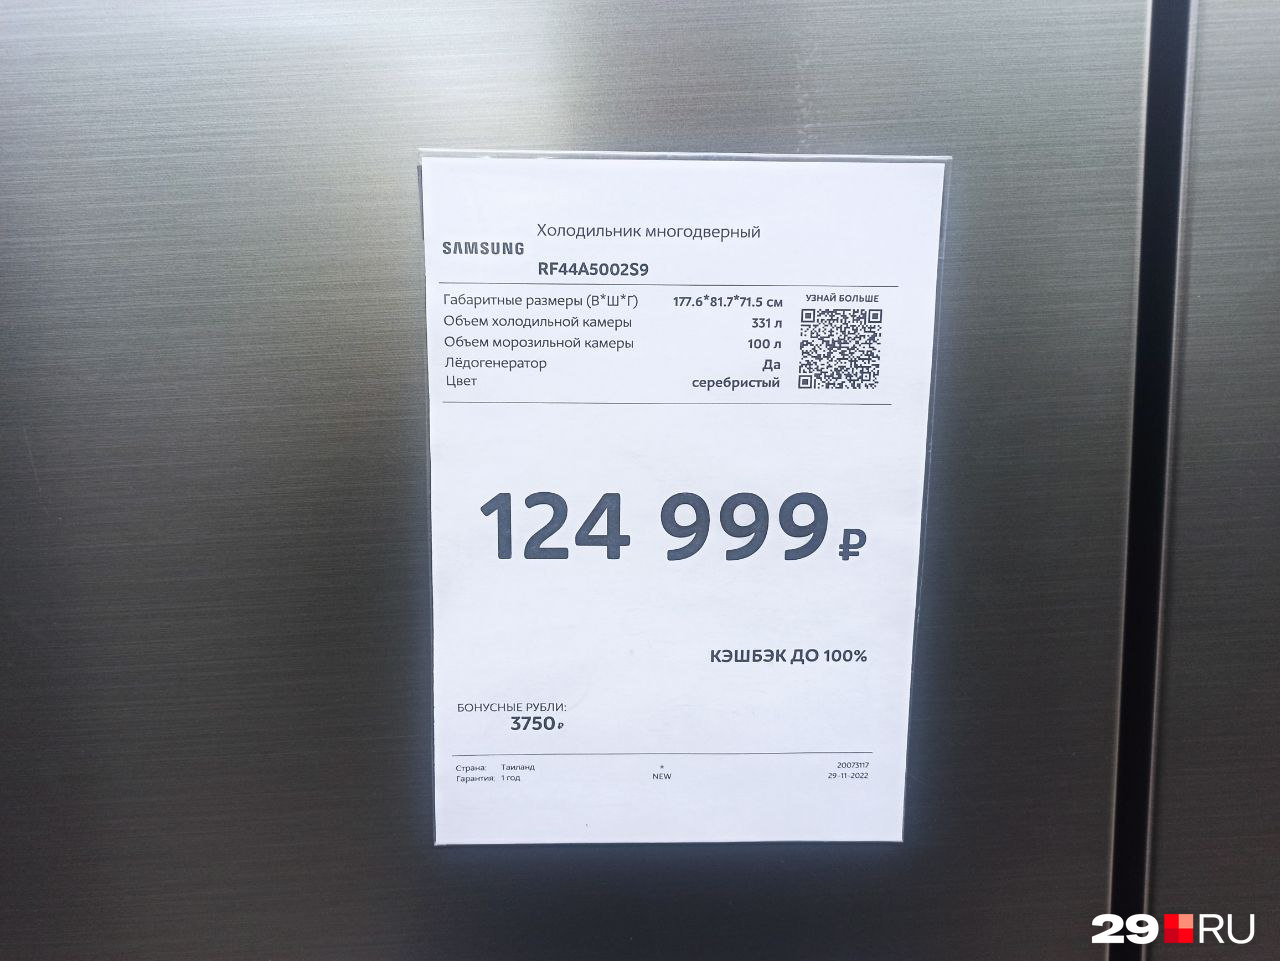 Есть выбор — купить холодильник или одну <a href="https://29.ru/text/realty/2021/02/12/69762419/" class="_" target="_blank">из самых дешевых квартир в Архангельске</a>